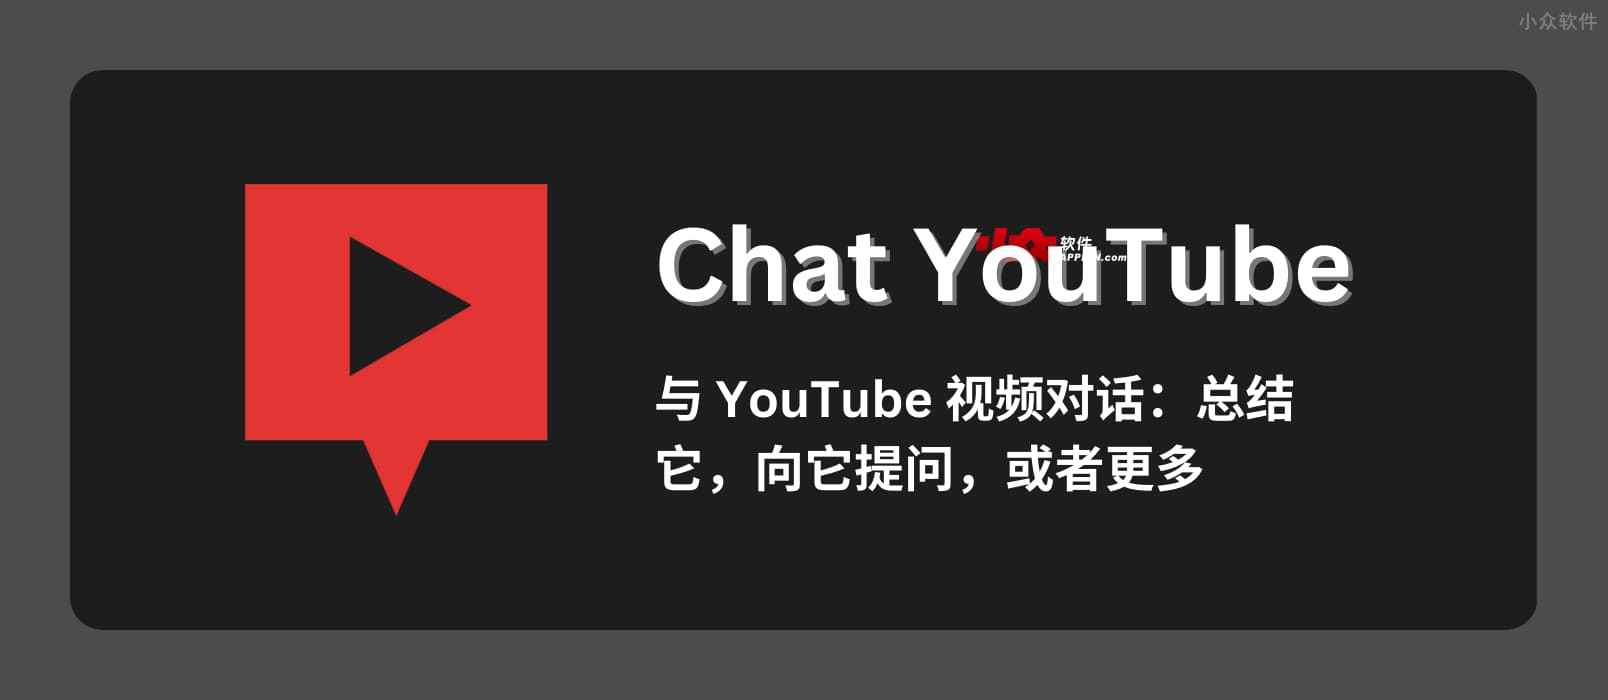 Chat YouTube – 用 ChatGPT 总结视频、向视频提问。再也不用看视频了。【已下架】